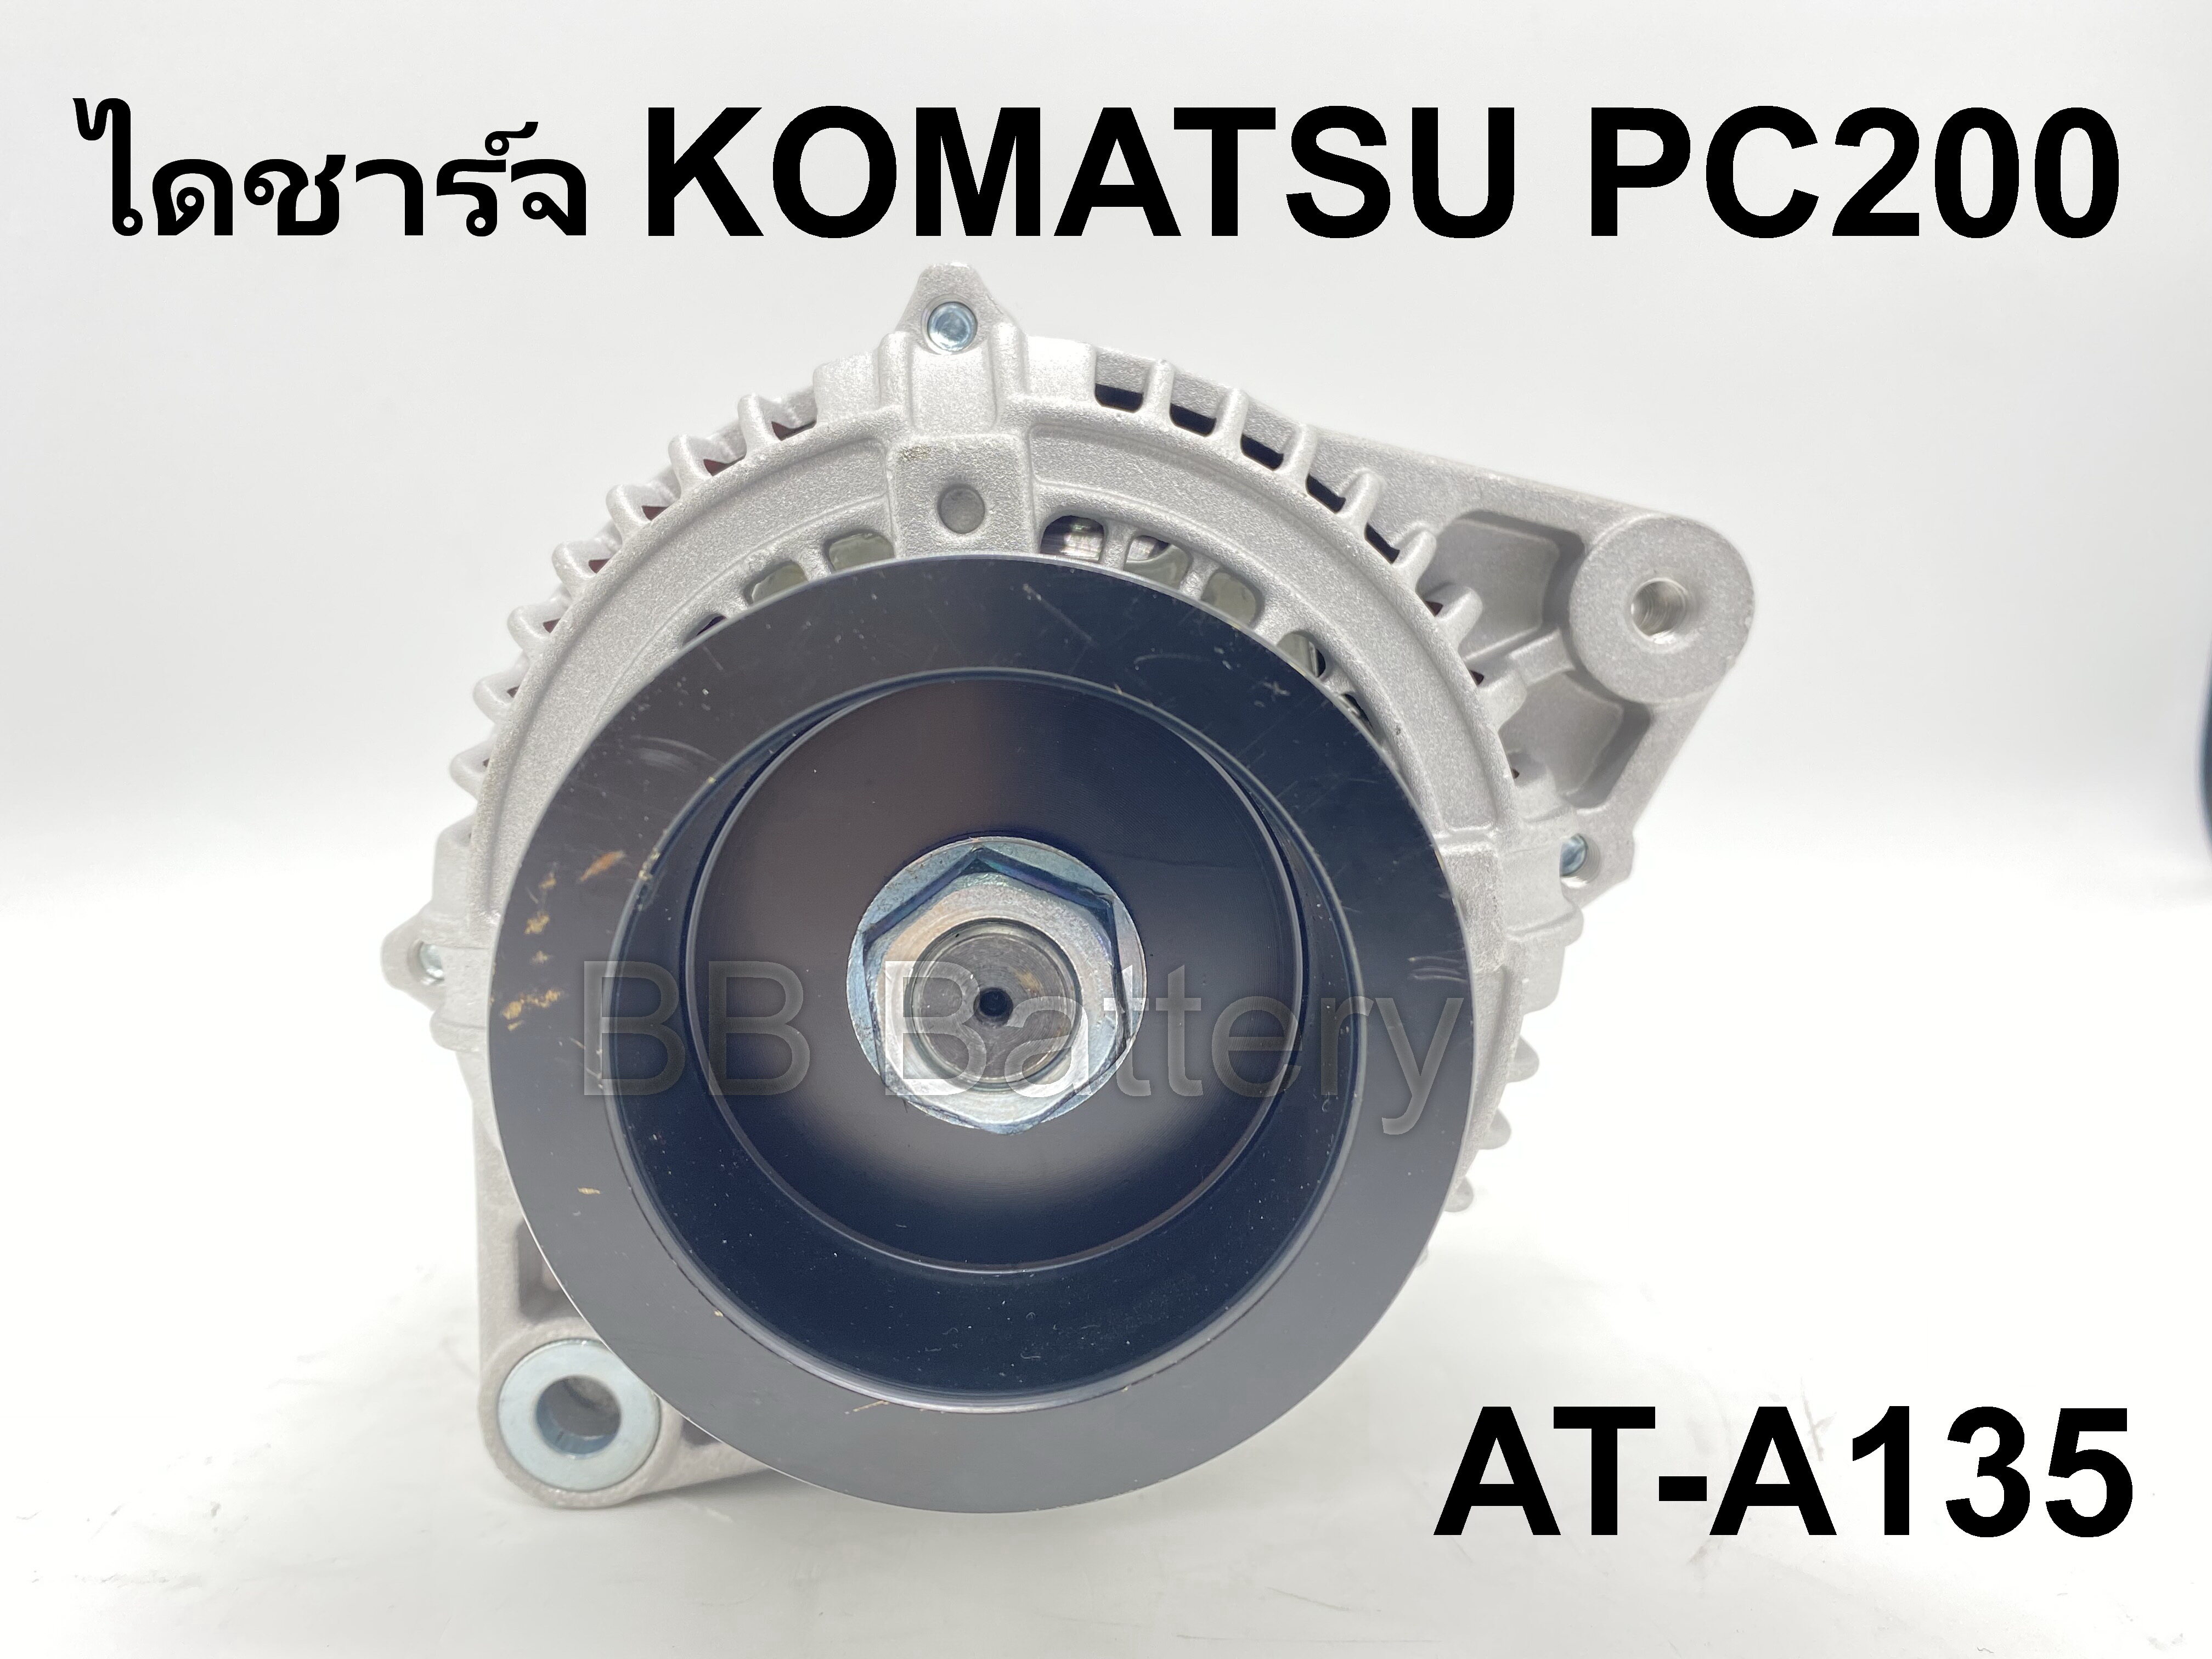 ? ไดชาร์จ โคมัทสุ KOMATSU PC200 24V 70A (ของใหม่) รับประกัน 3เดือน